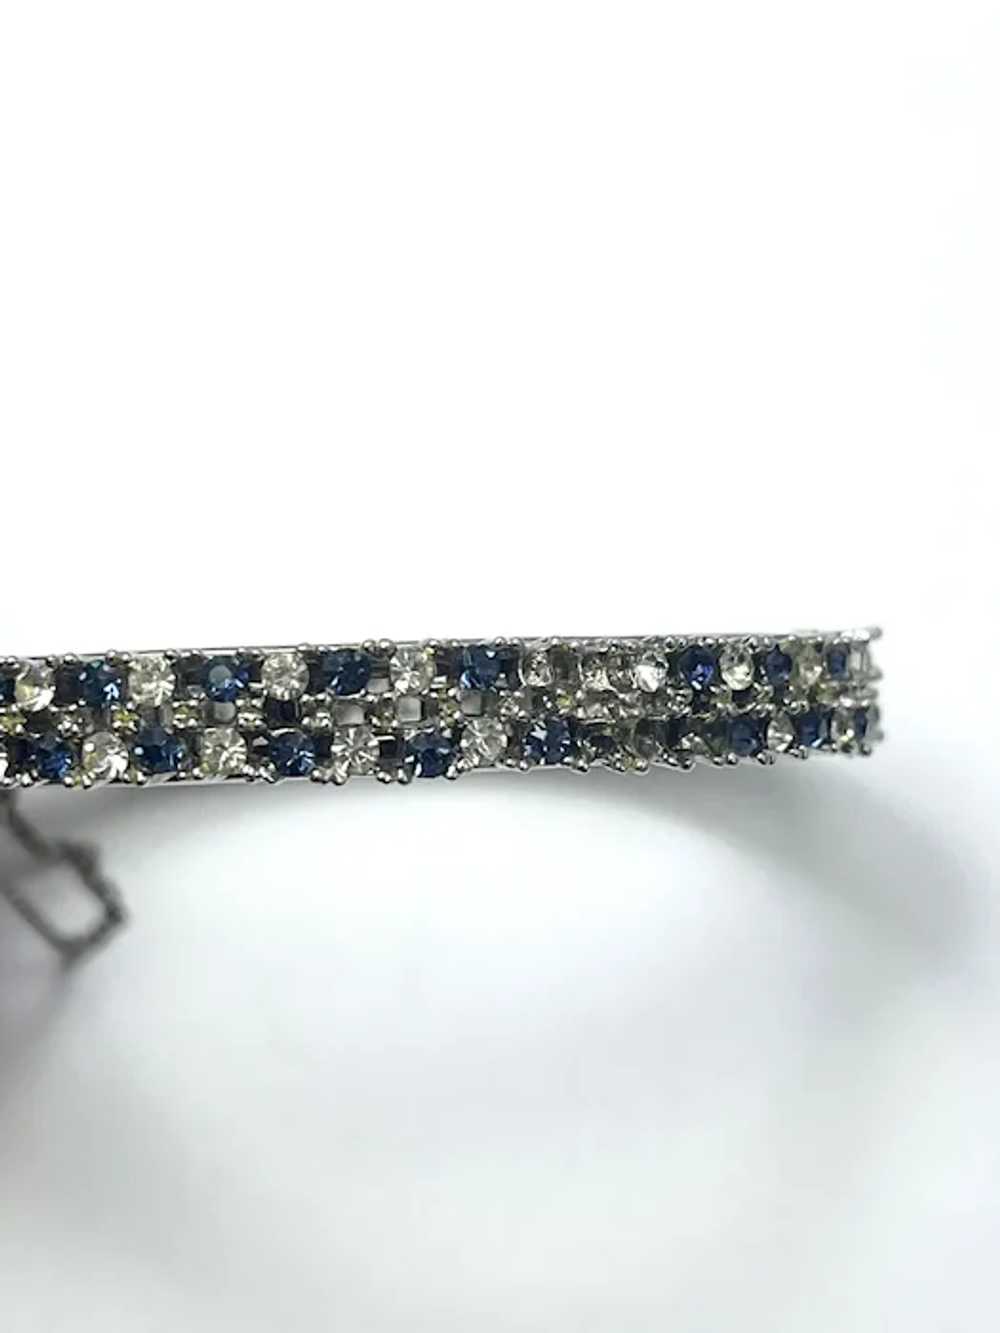 Vintage Blue Rhinestone Bangle Bracelet - image 6